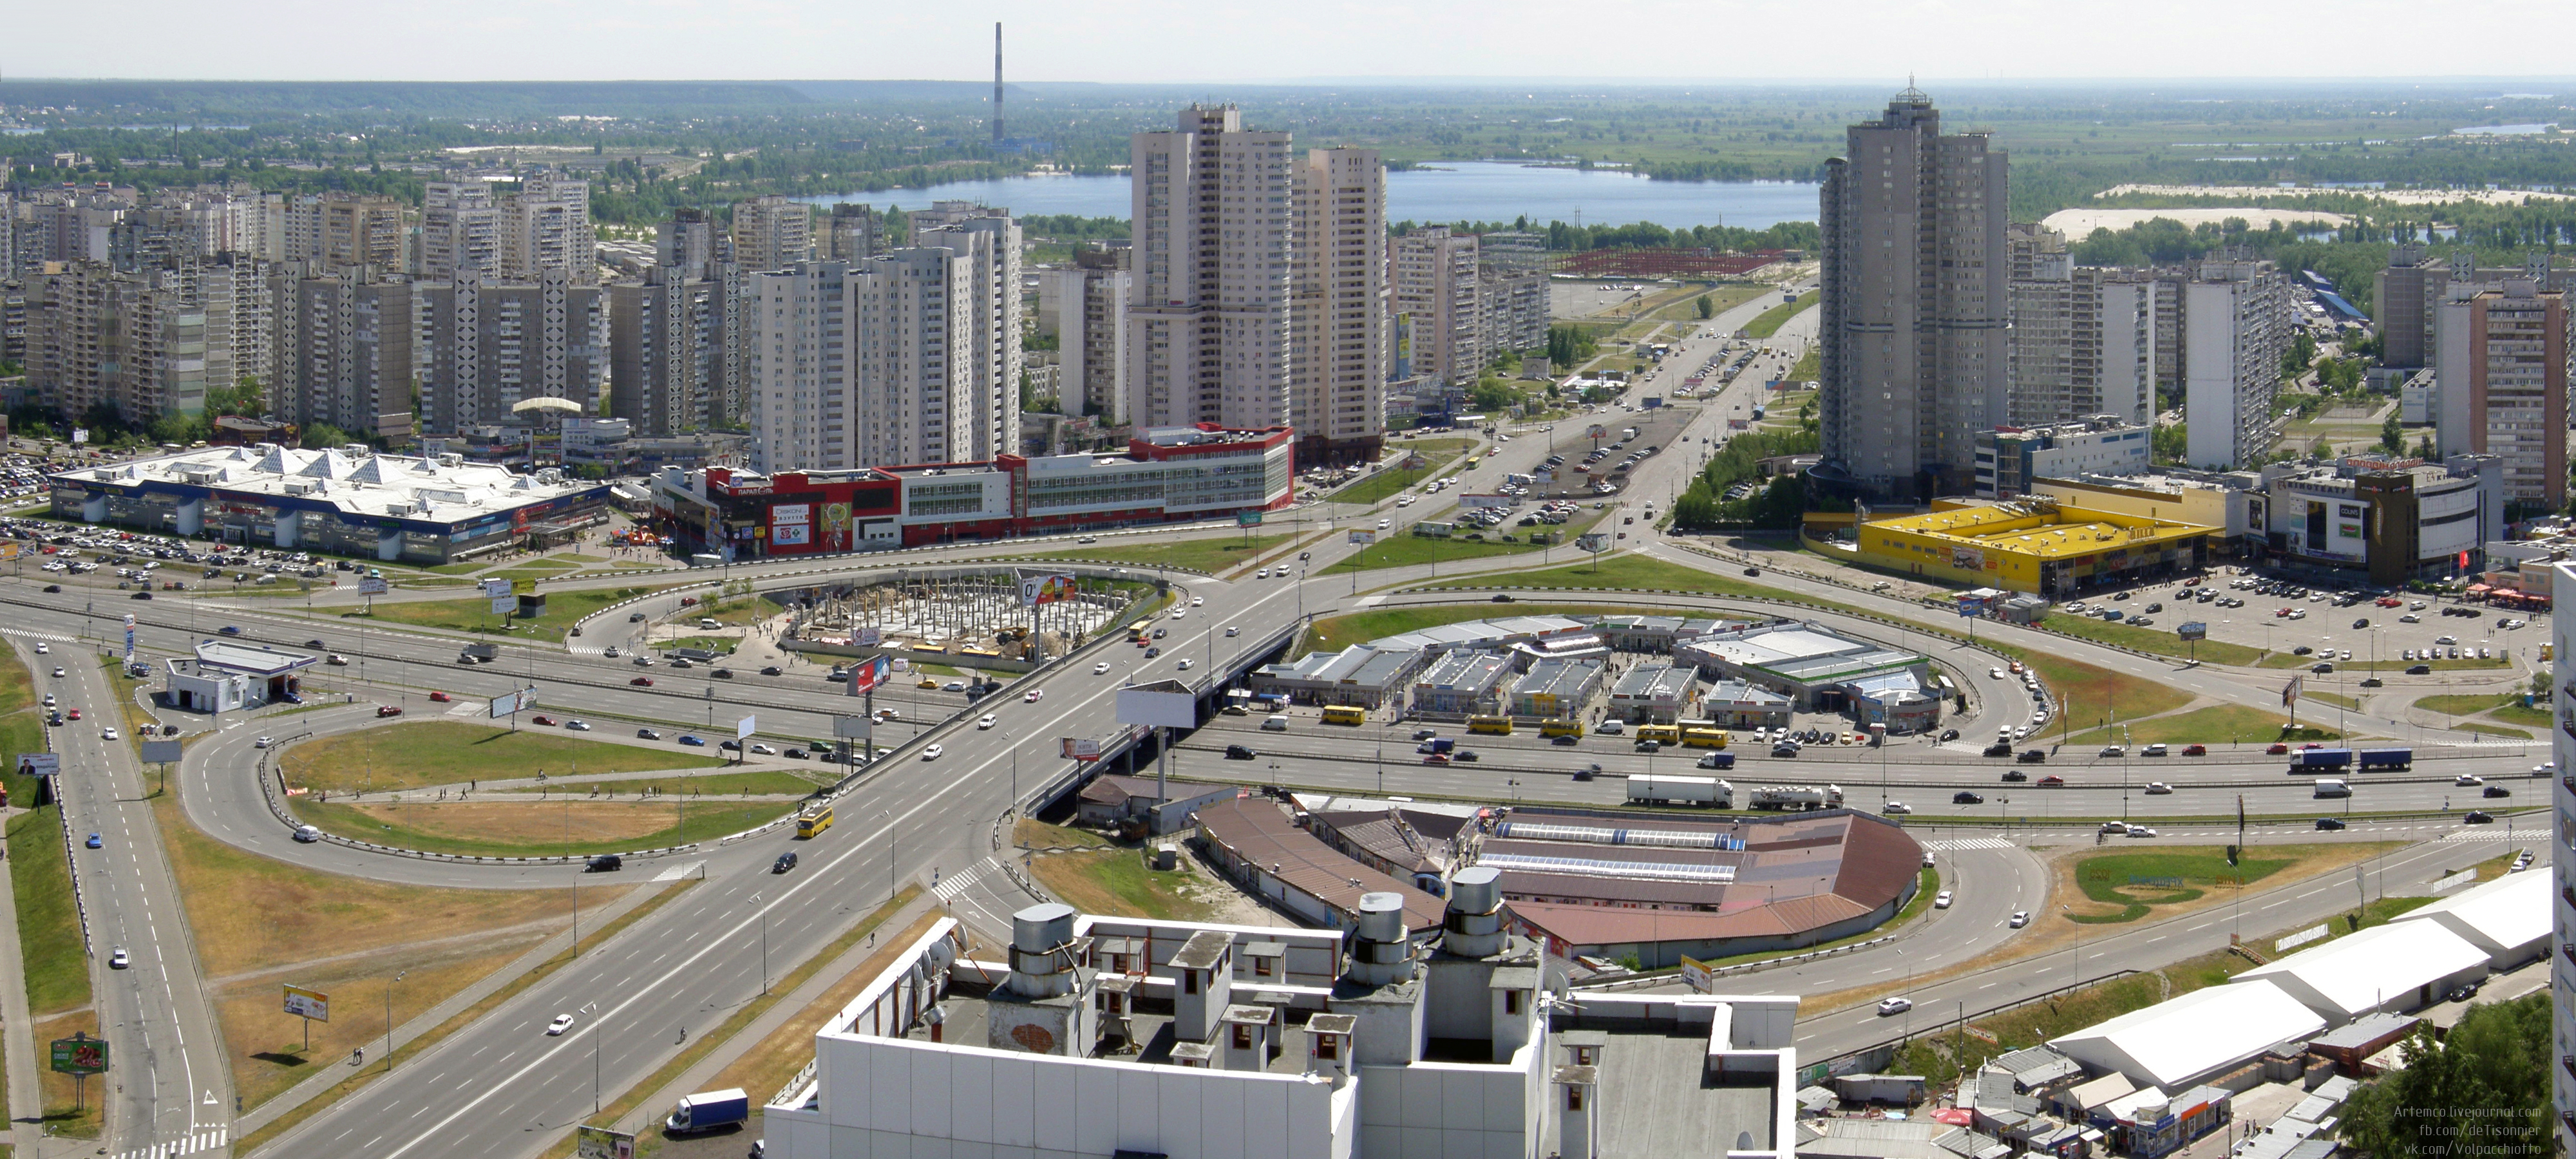 На два дня закроют движение транспорта на развязке в Дарницком районе Киева